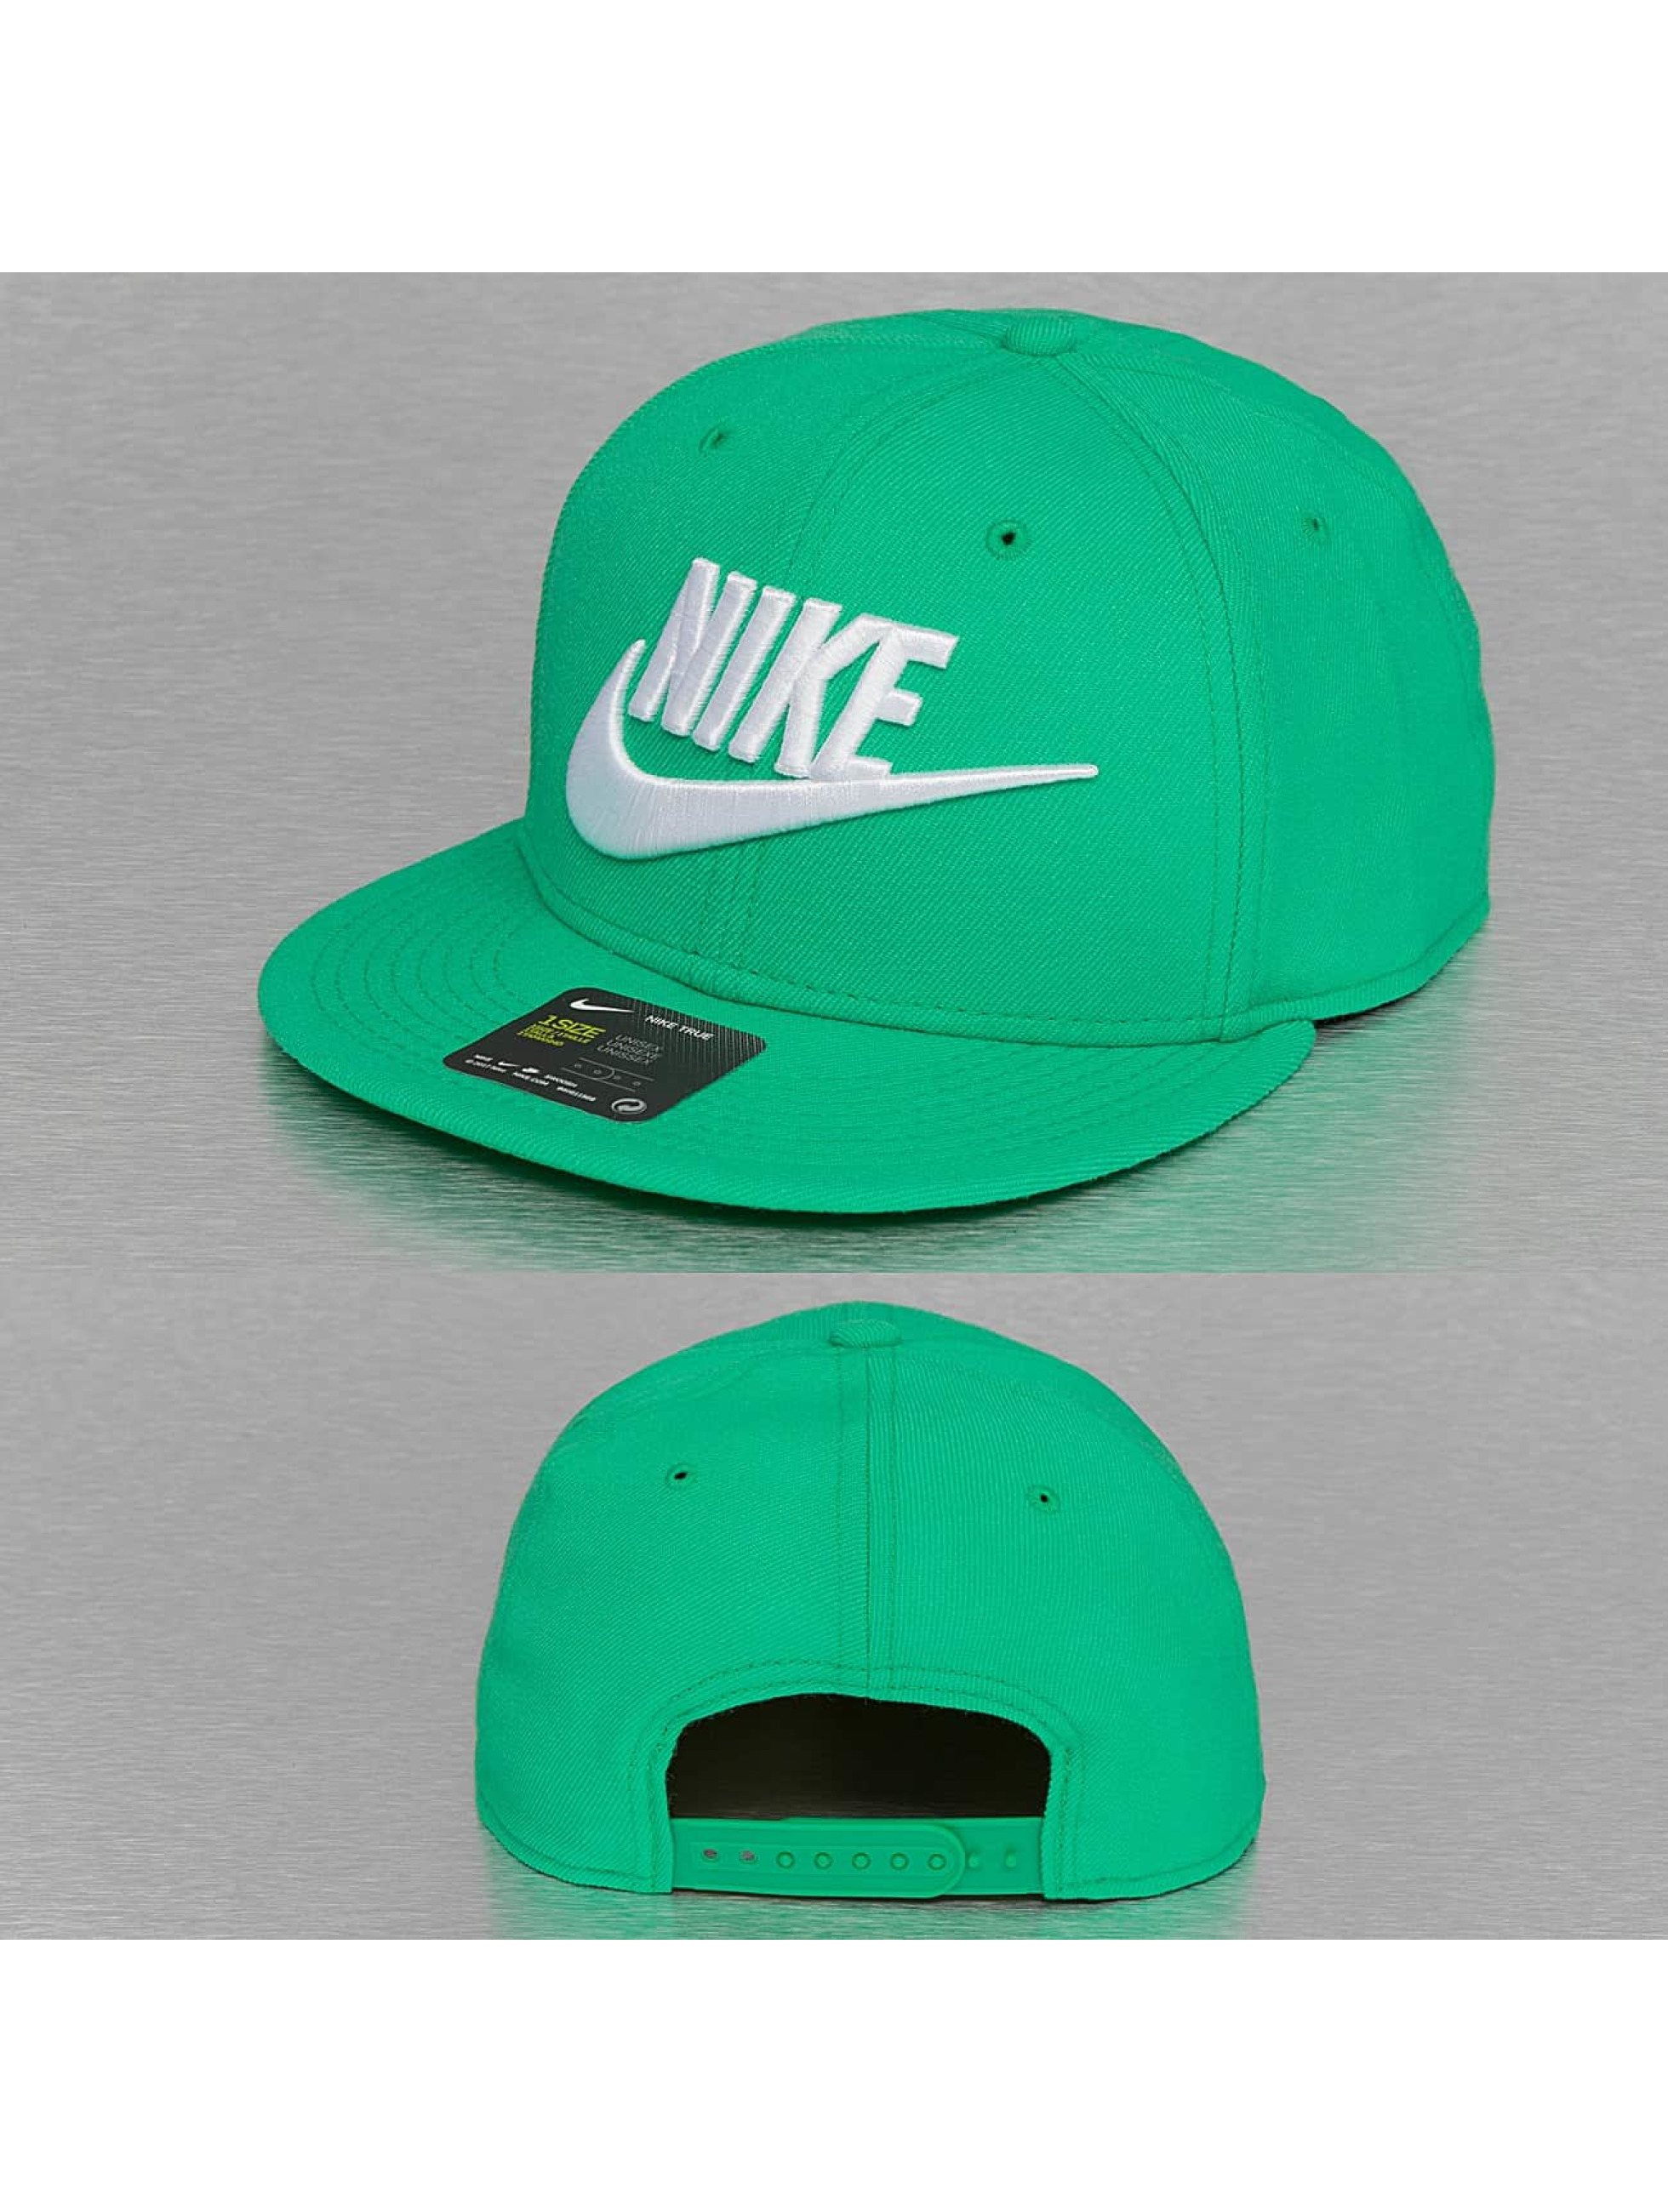 Nike Casquette / Snapback True en vert